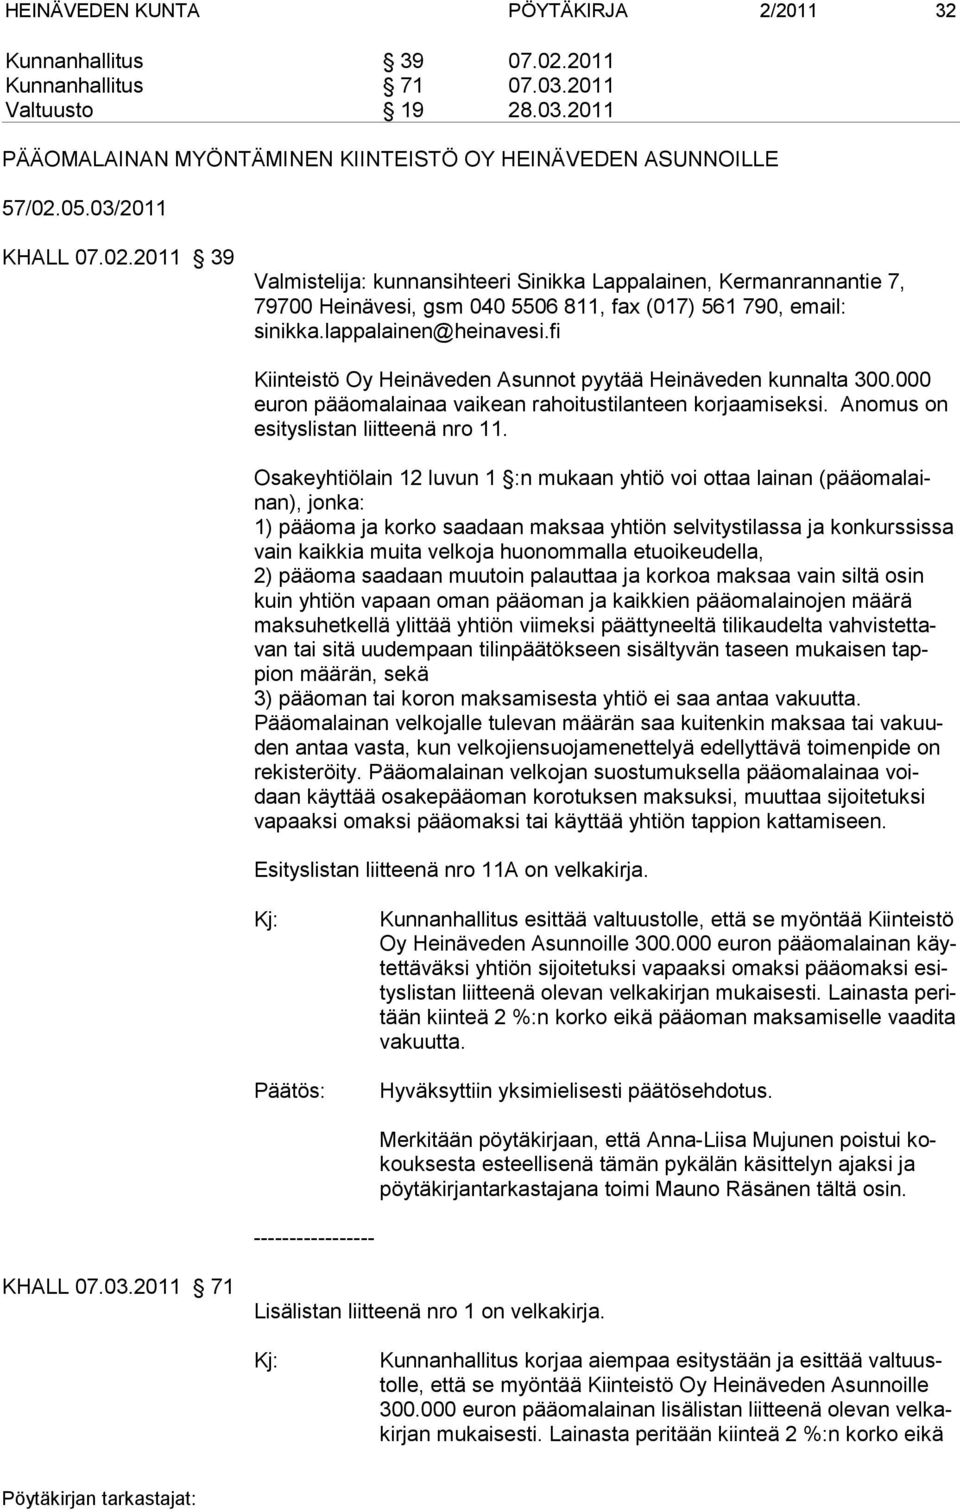 fi Kiinteistö Oy Heinäveden Asunnot pyytää Heinäveden kunnalta 300.000 euron pääomalainaa vaikean rahoitustilanteen korjaamiseksi. Anomus on esi tys lis tan liit tee nä nro 11.